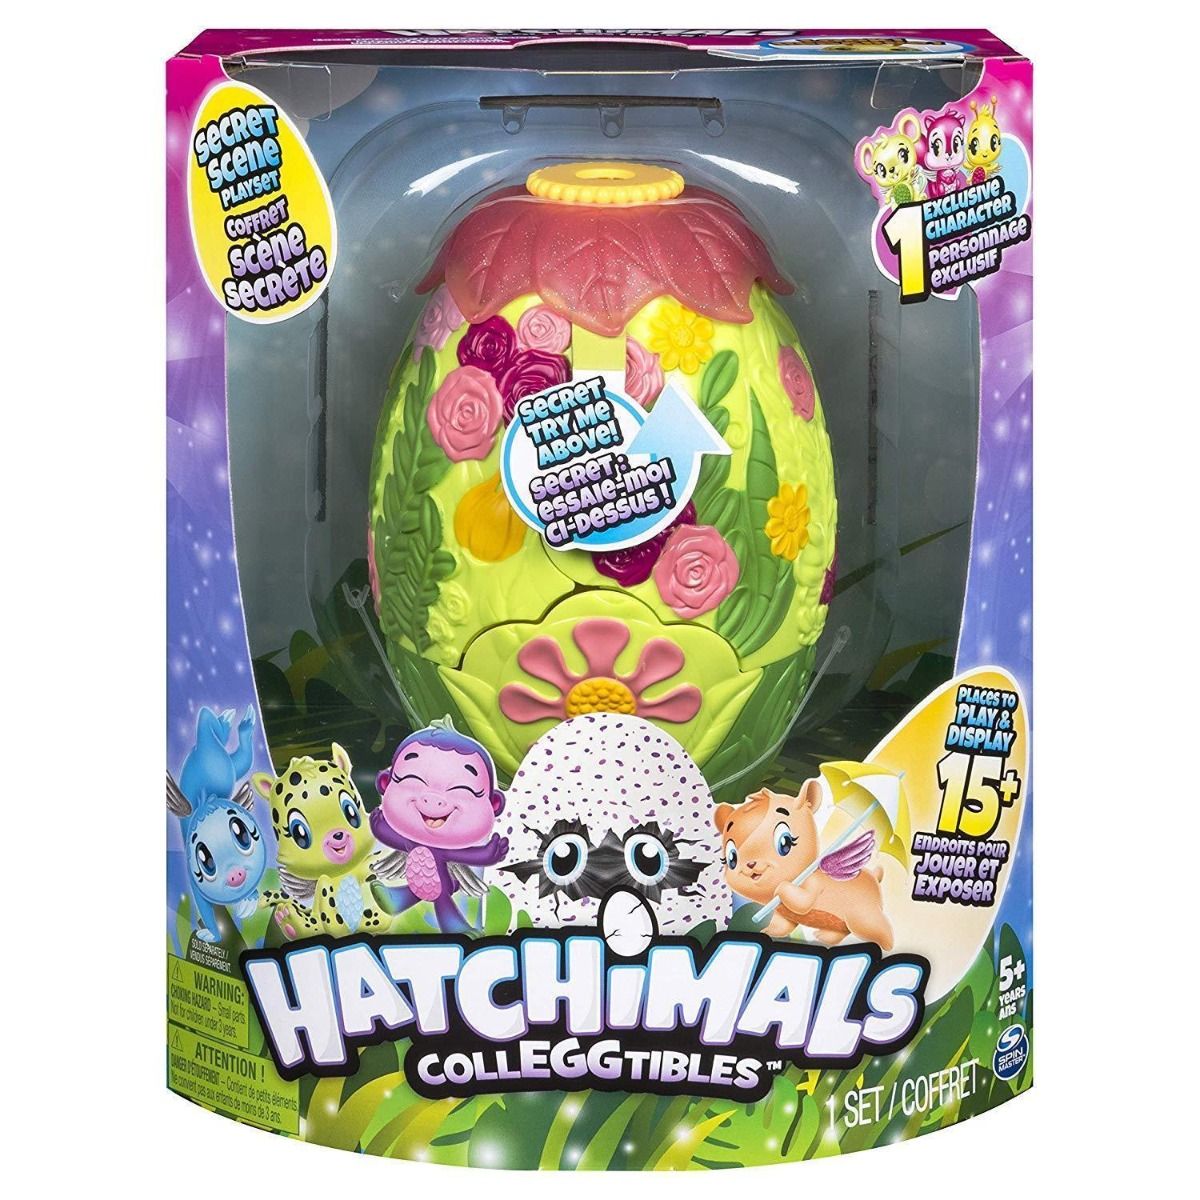 Hatchimals CollEGGtibles Glittering Garden Secret Scene Childrens Playset 5 New 